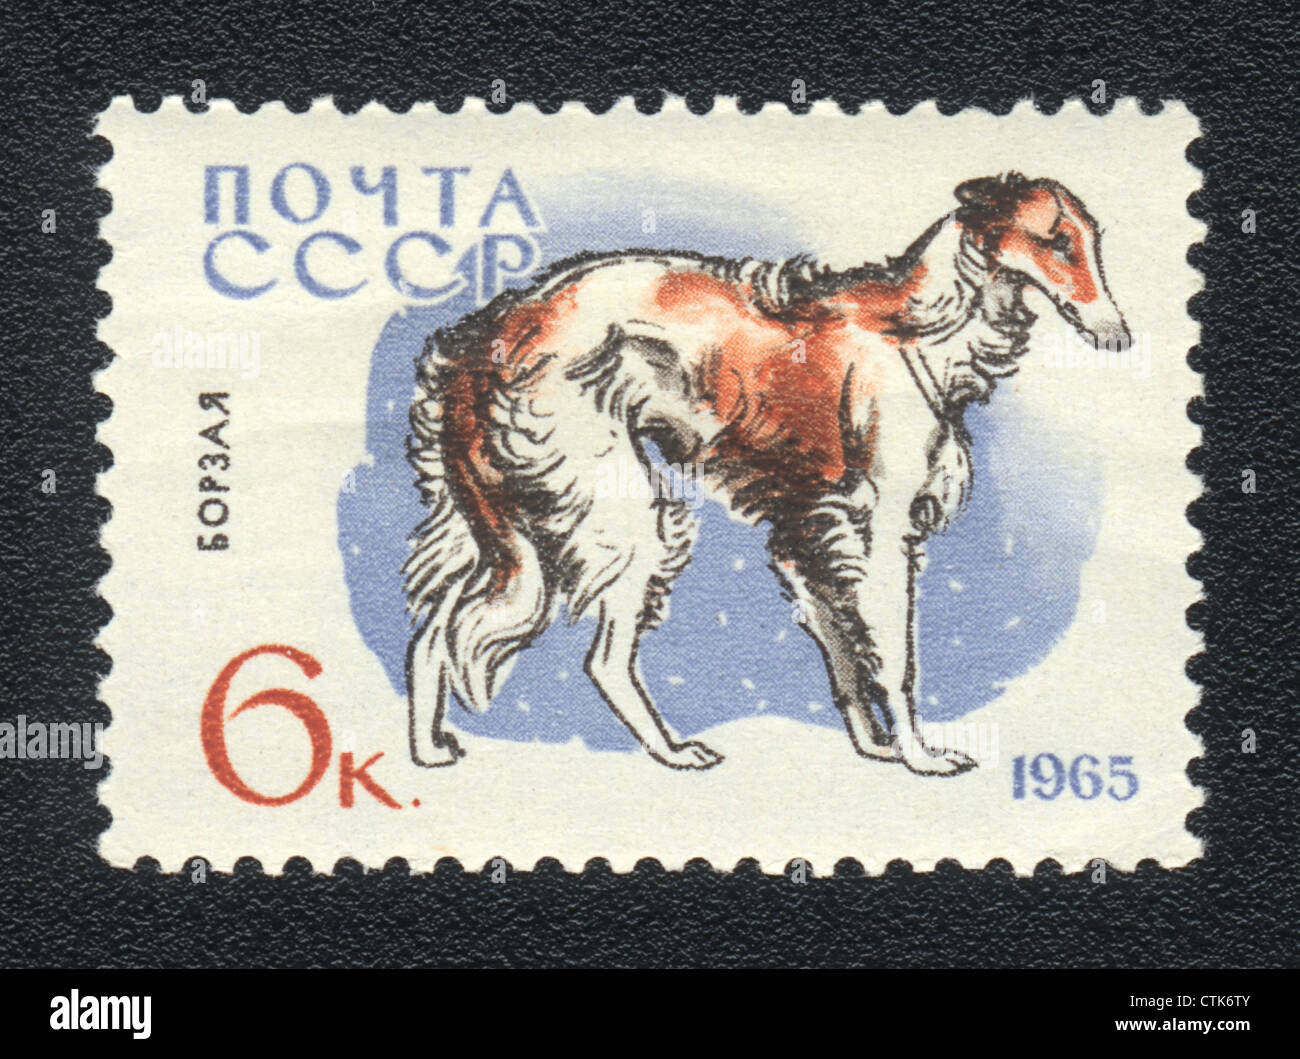 Urss - VERS 1965 : un timbre imprimé en URSS montre greyhound, series races de chiens, vers 1965 Banque D'Images